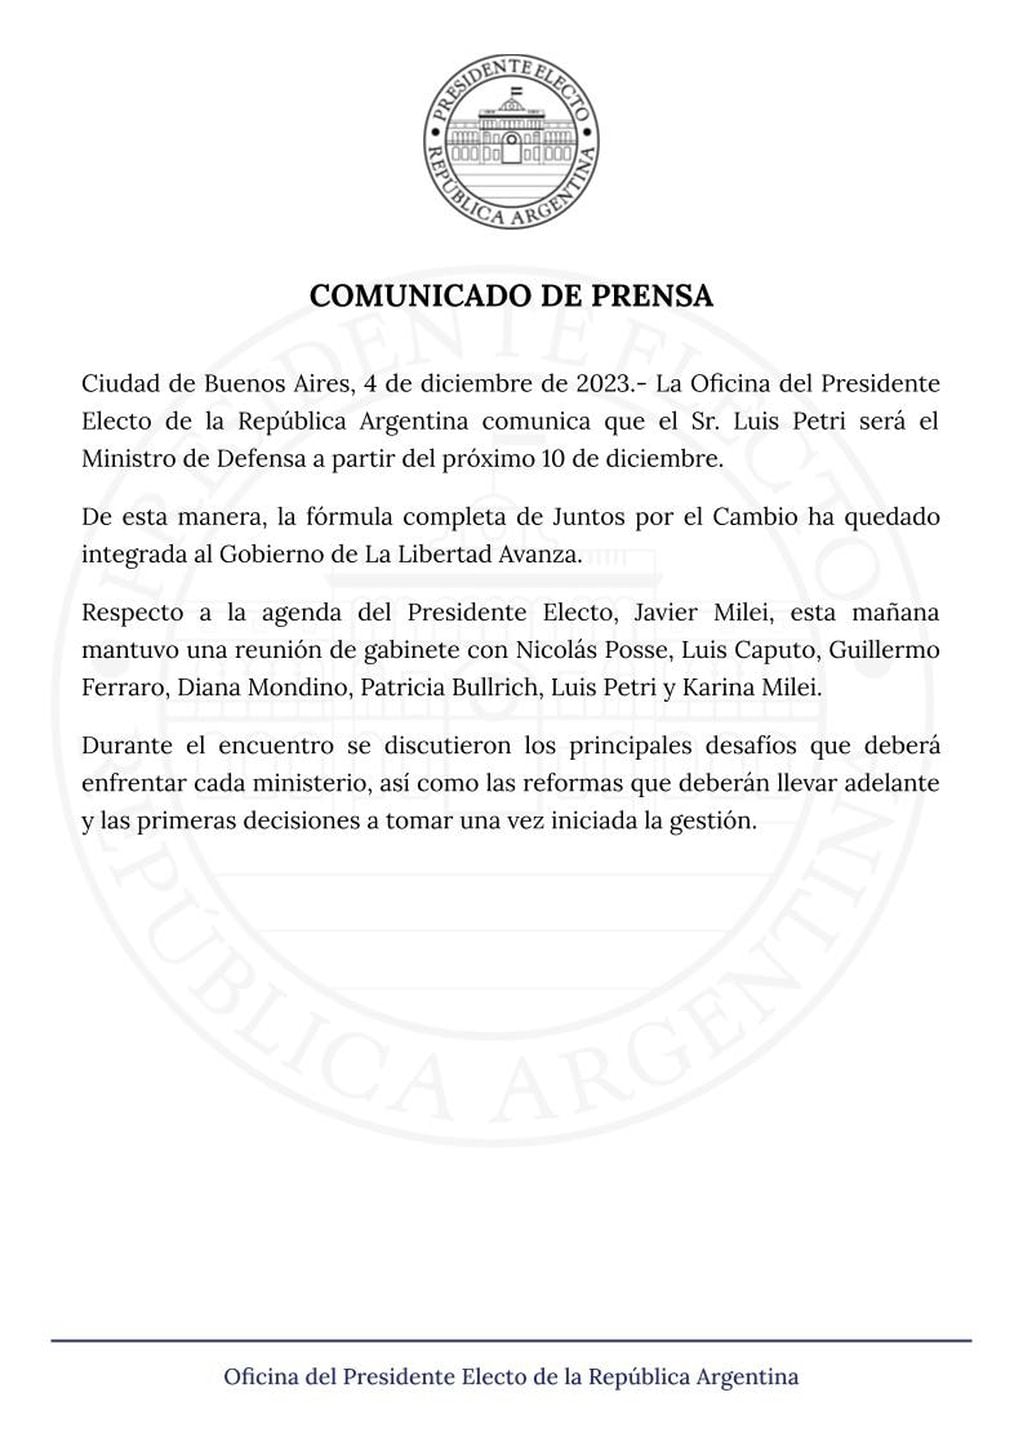 Cristina Pérez y su posteo tras conocerse que Petri será el nuevo Ministro de Defensa